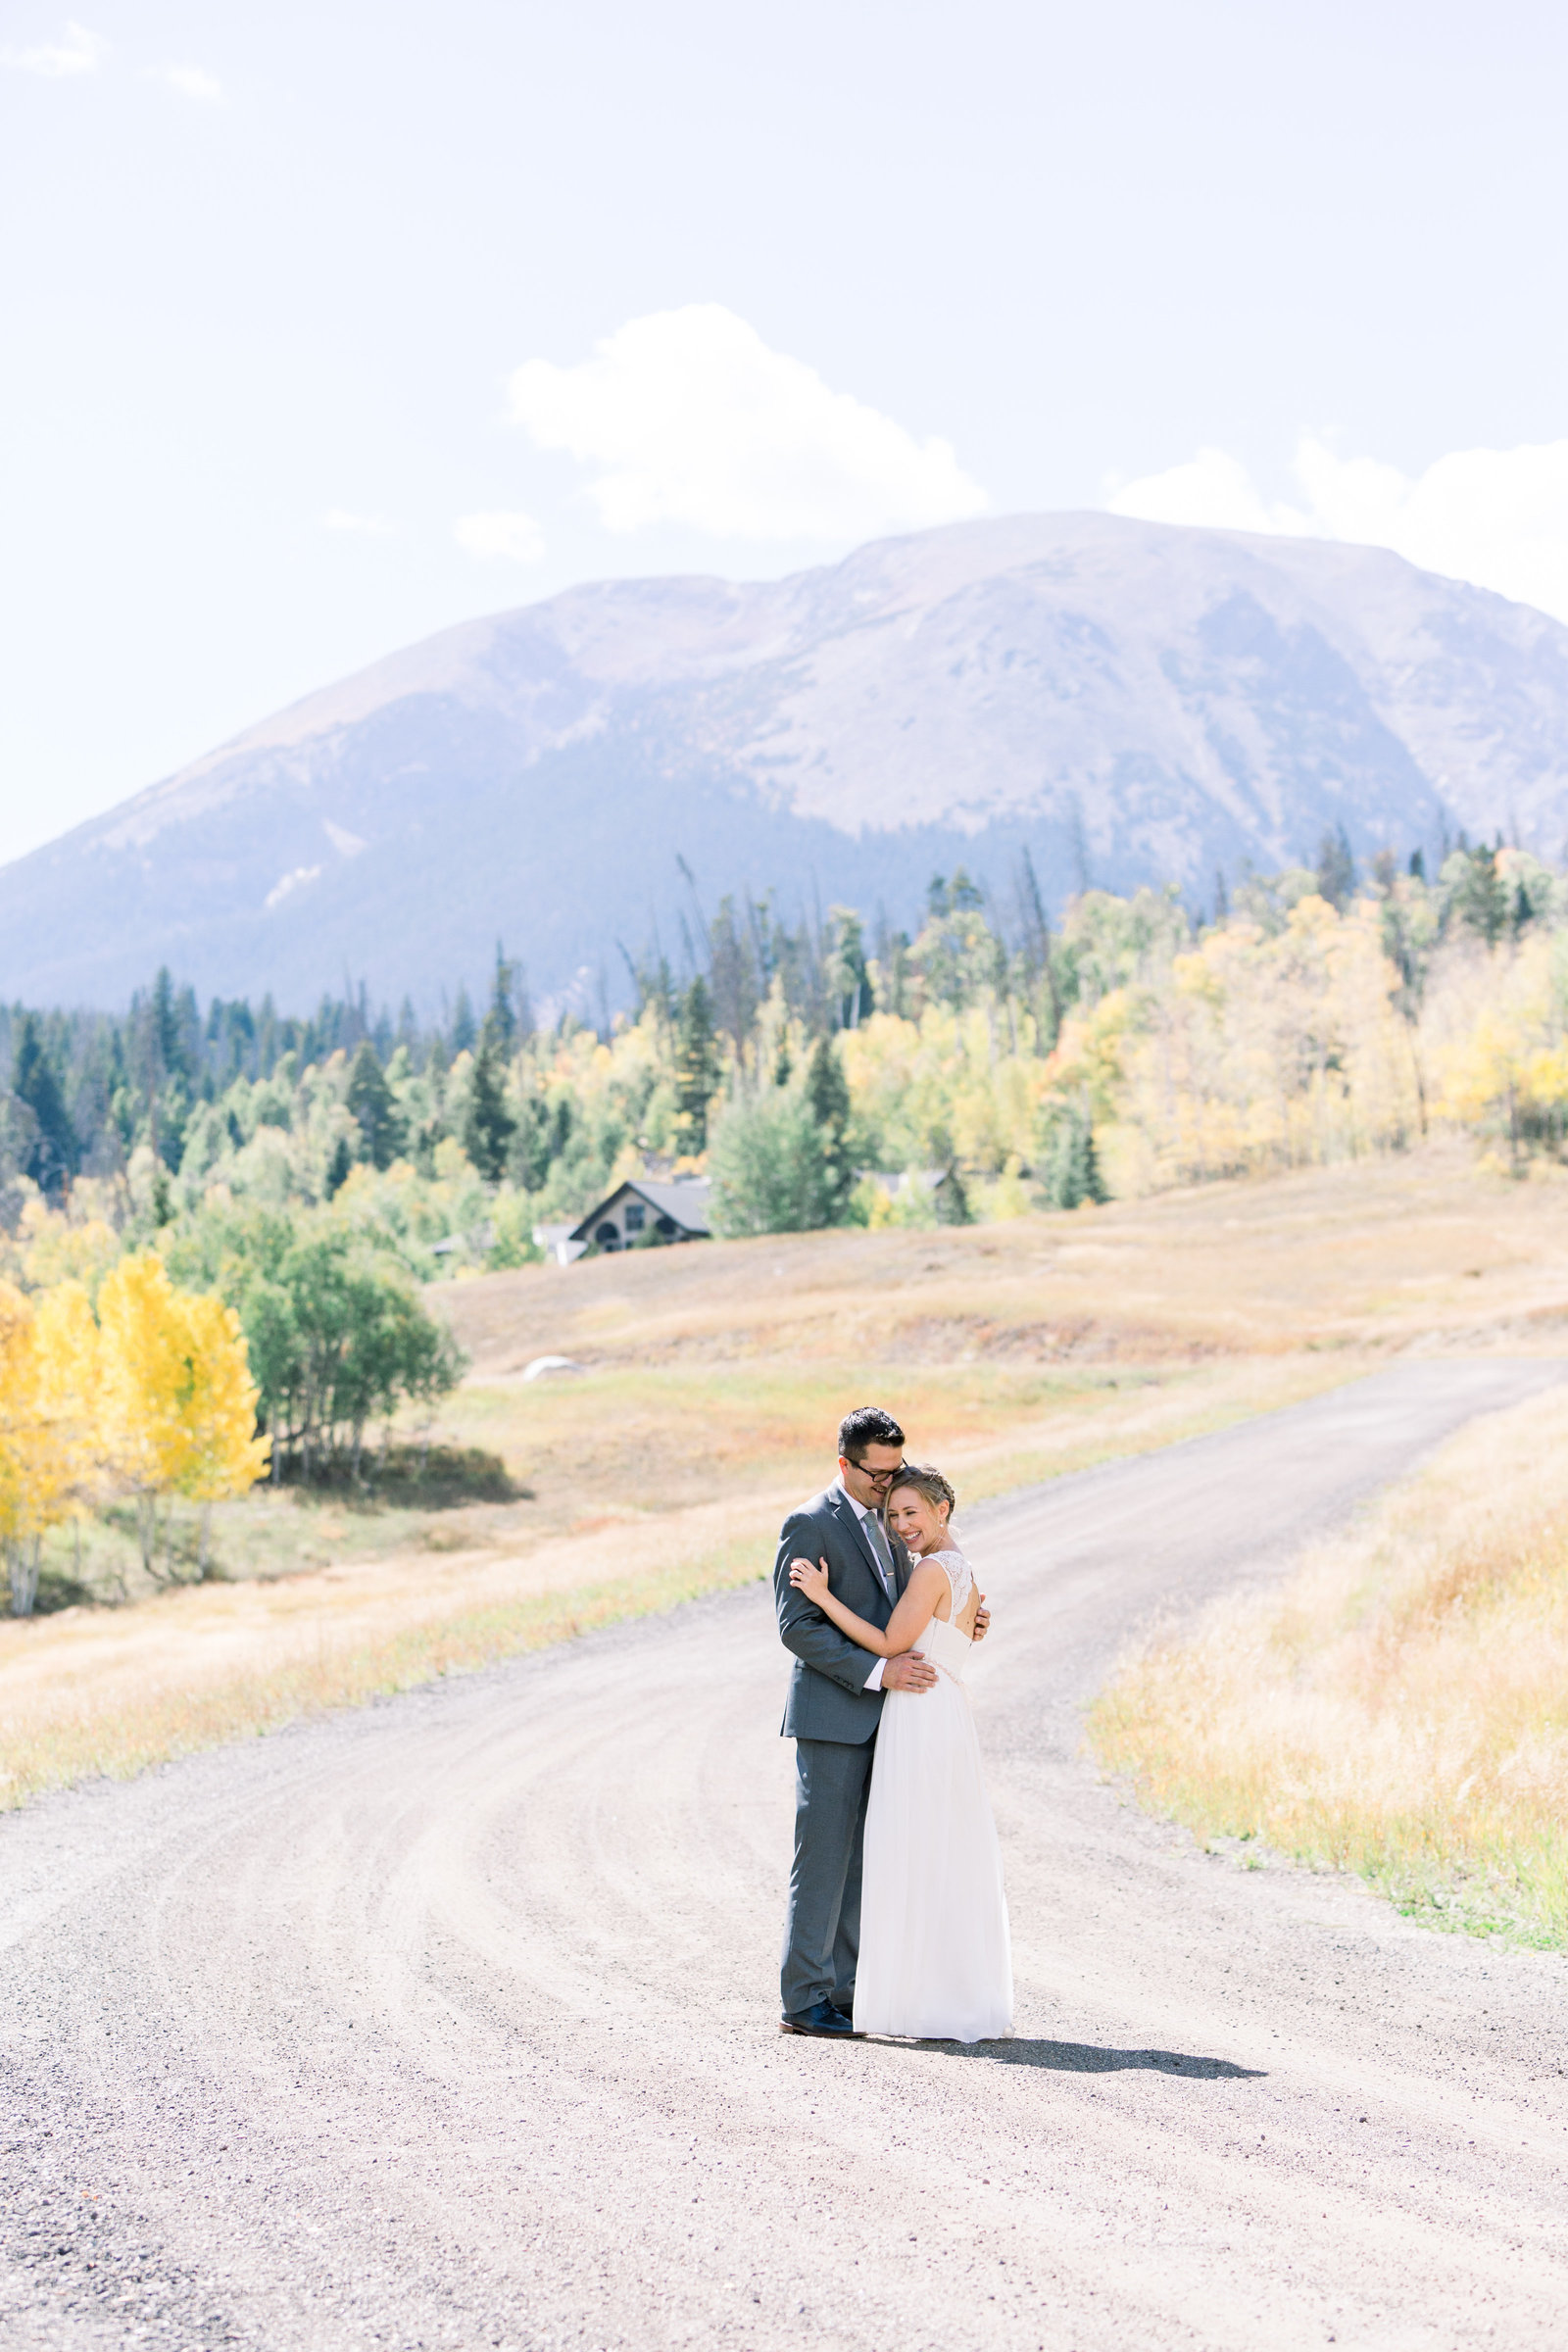 A small, intimate elopement in Lake Dillon, Colorado